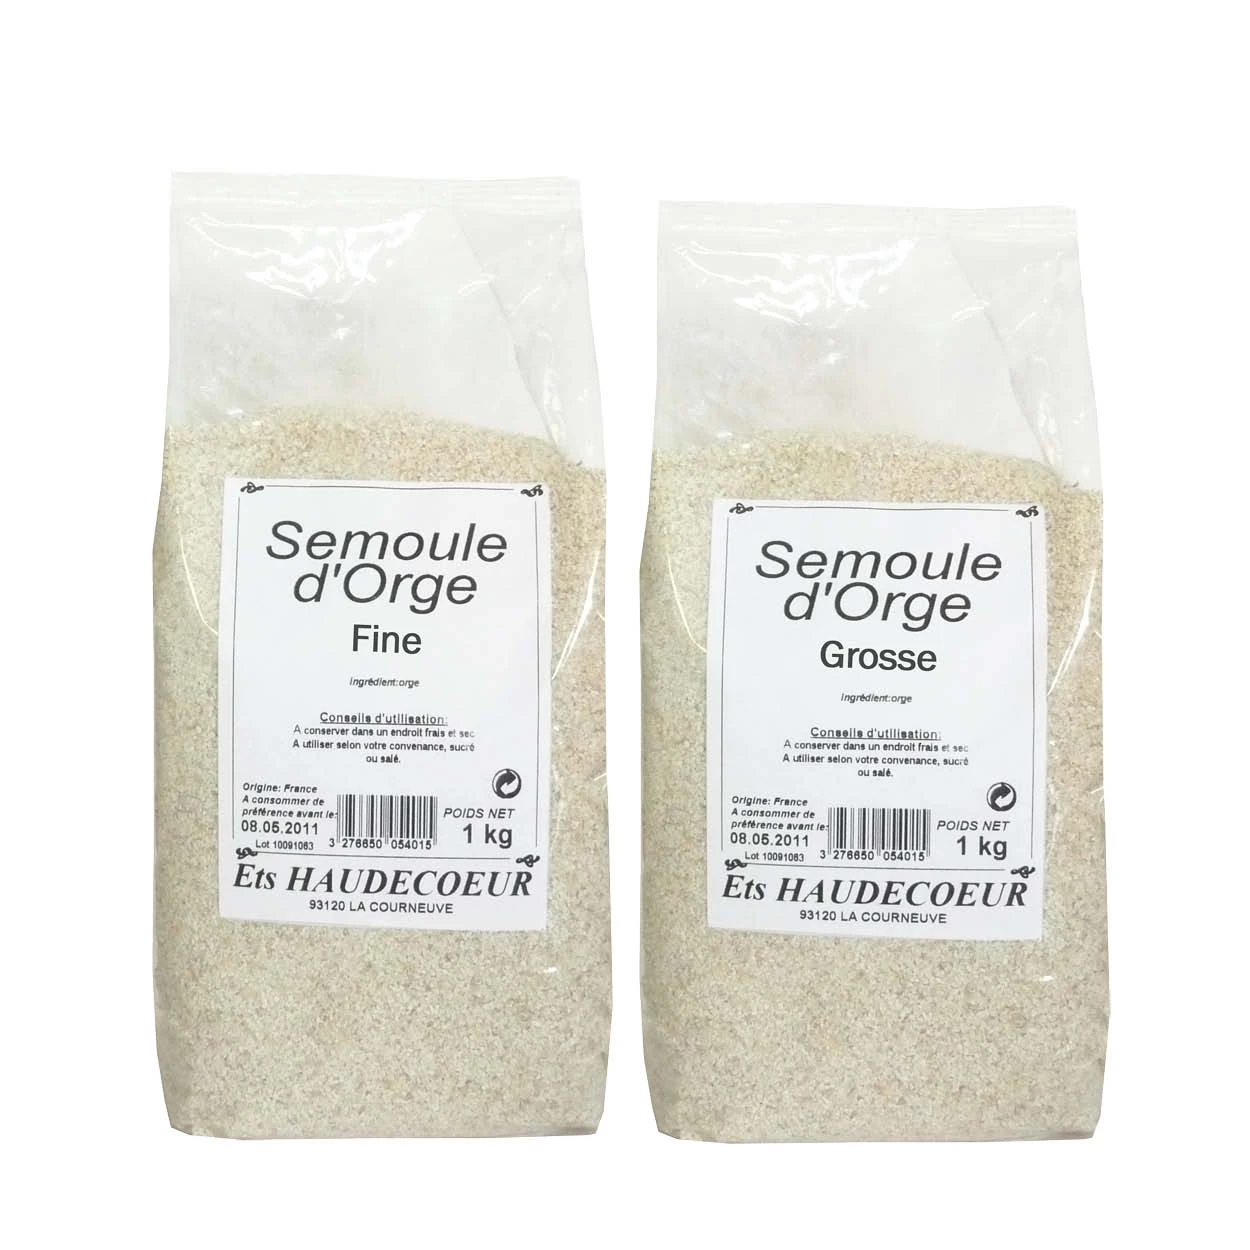 粗大麦粗面粉 1kg 浓缩液 A - Legumor